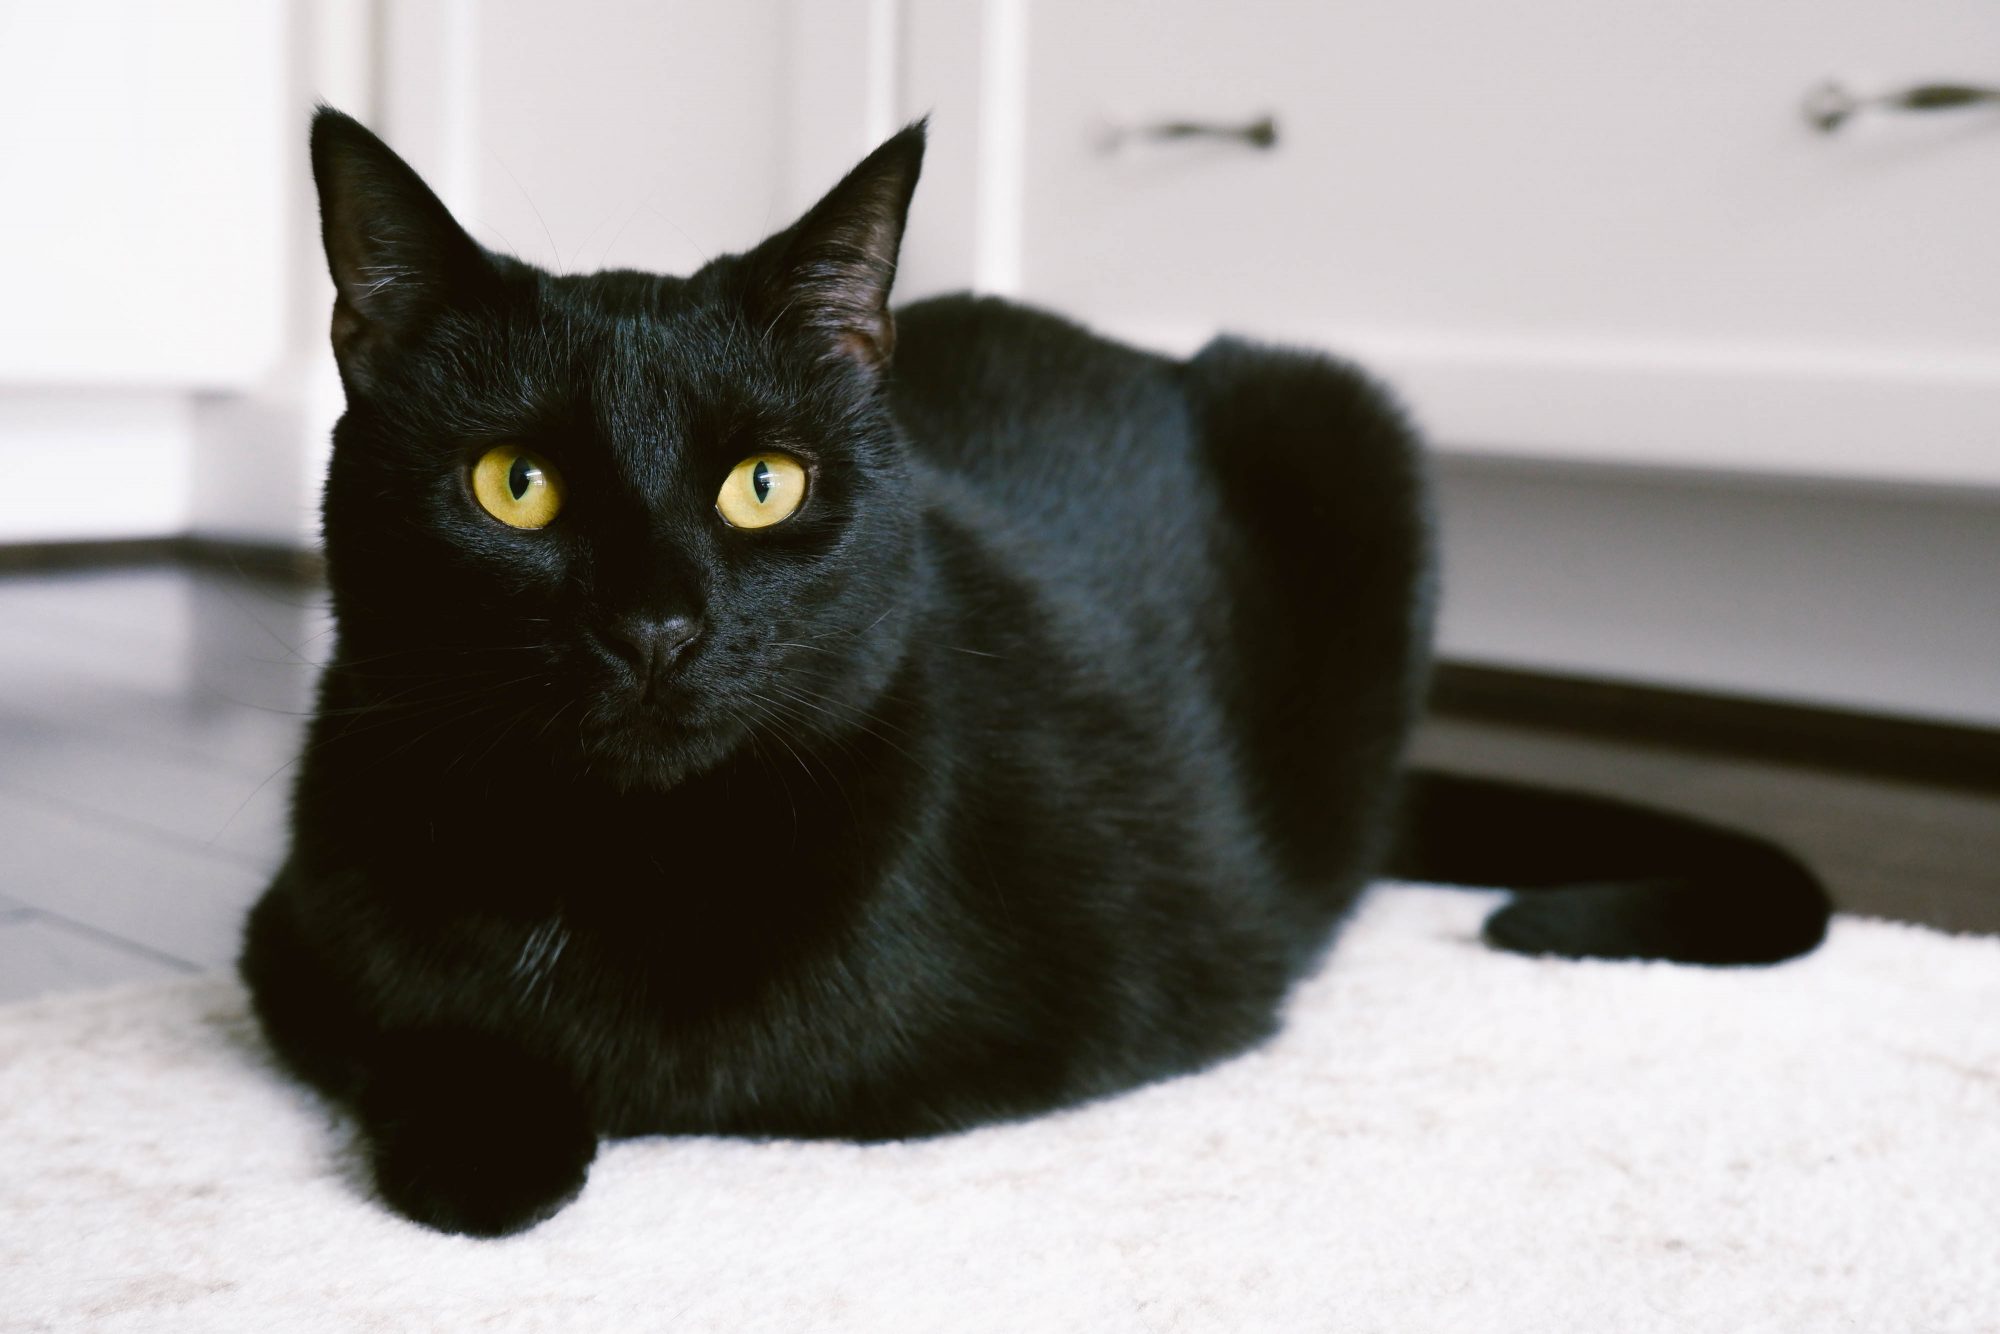 Biểu tượng mèo đen đem lại cho chúng ta sự may mắn, cảm giác bình an và sự bảo vệ. Hãy để hình ảnh con mèo đen dìu dắt bạn vào một thế giới đầy phép thuật và tiếng cười nhé!